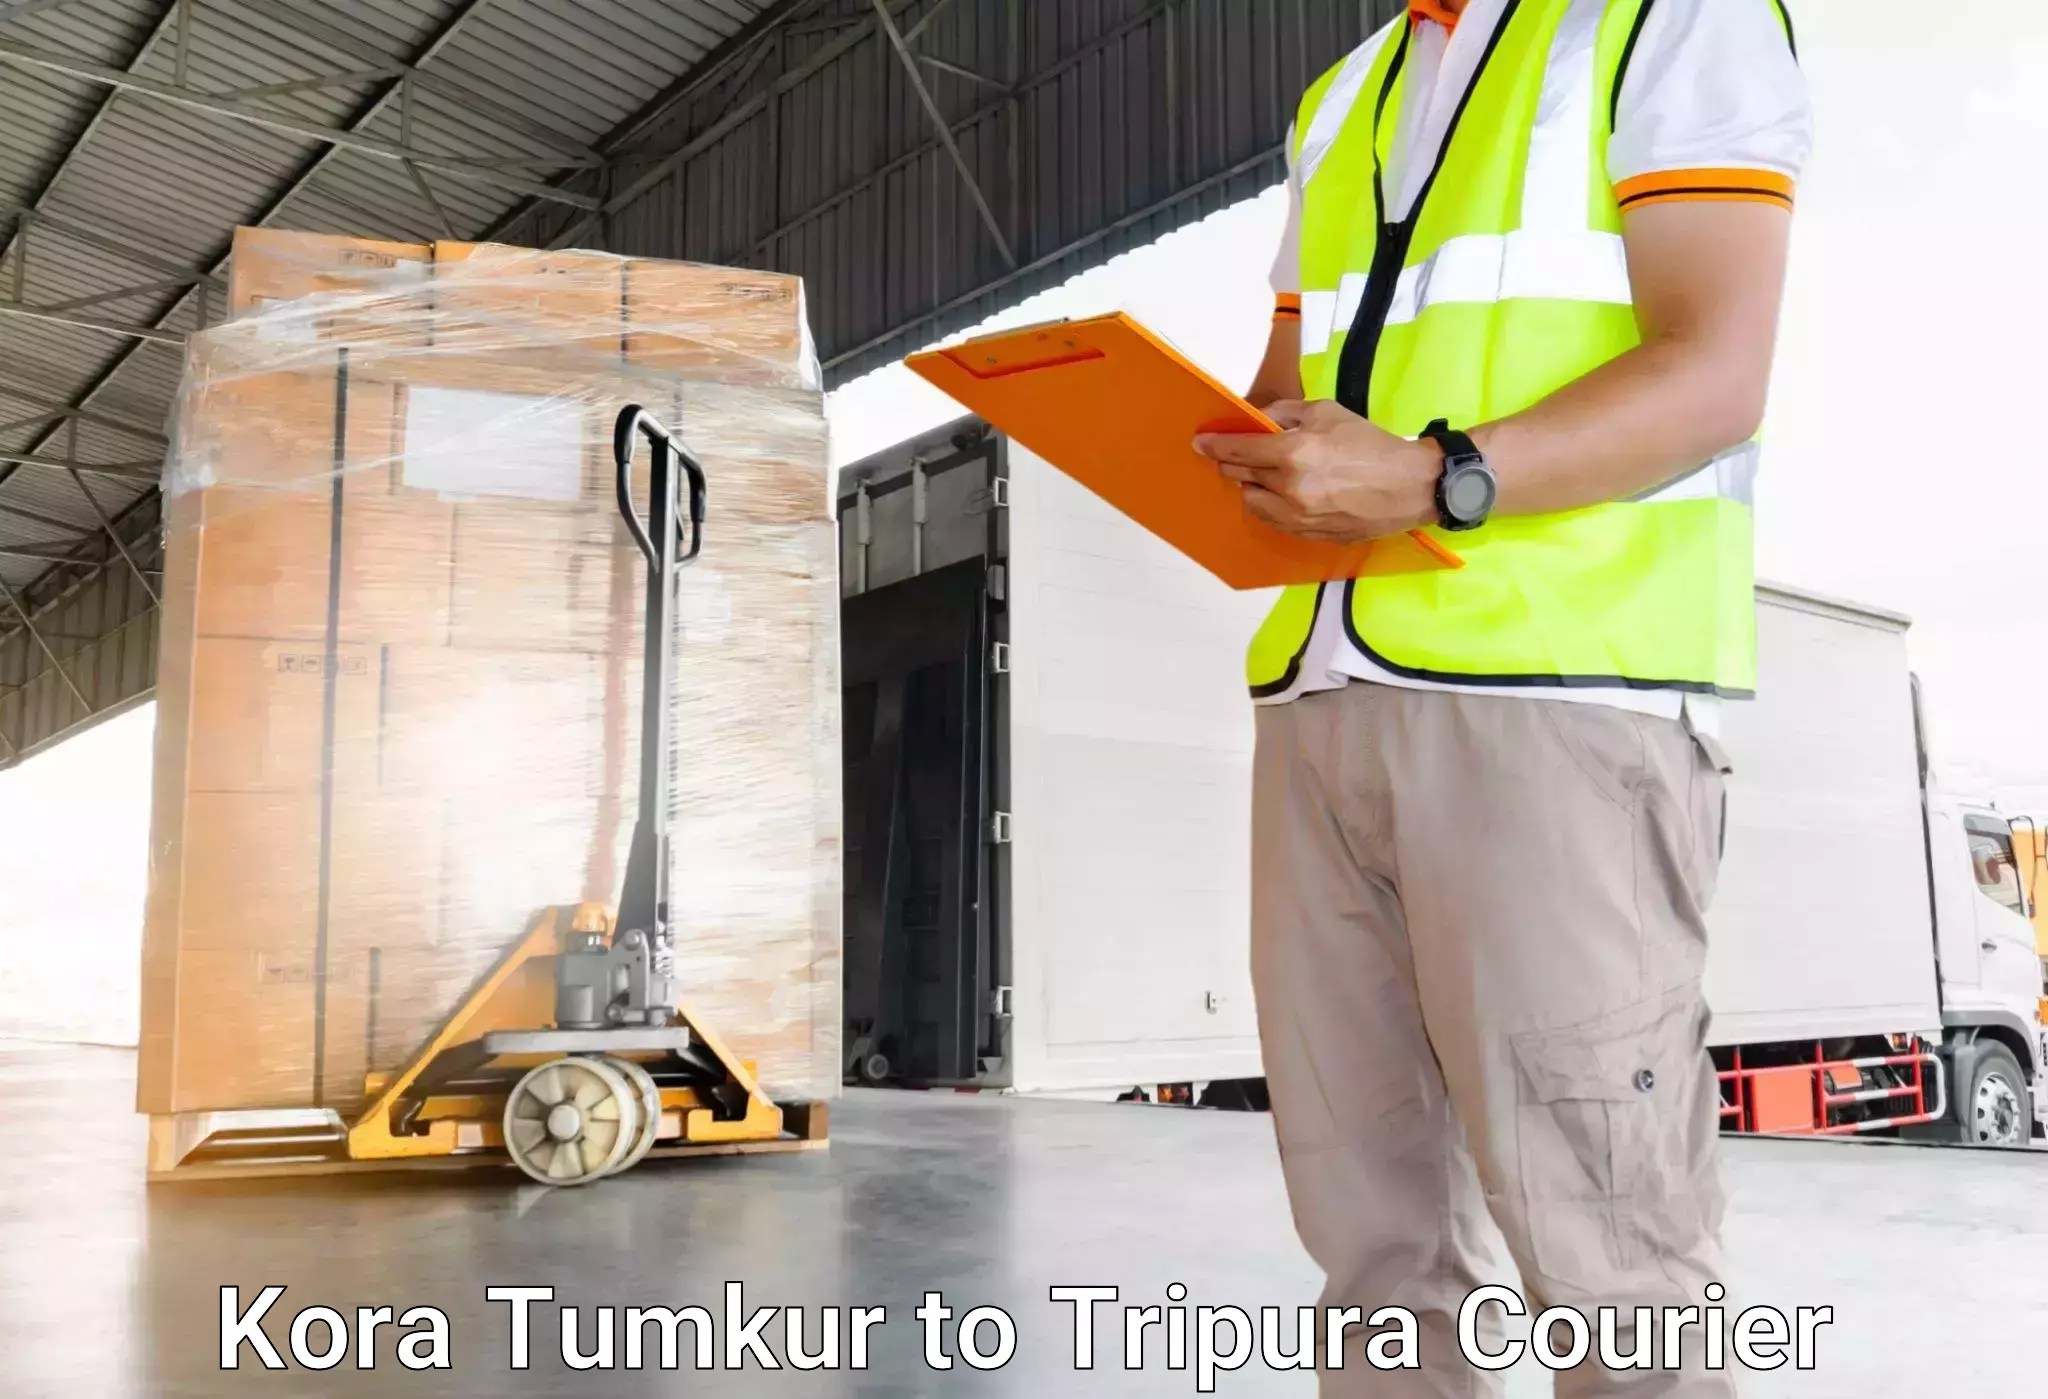 Professional baggage transport in Kora Tumkur to South Tripura